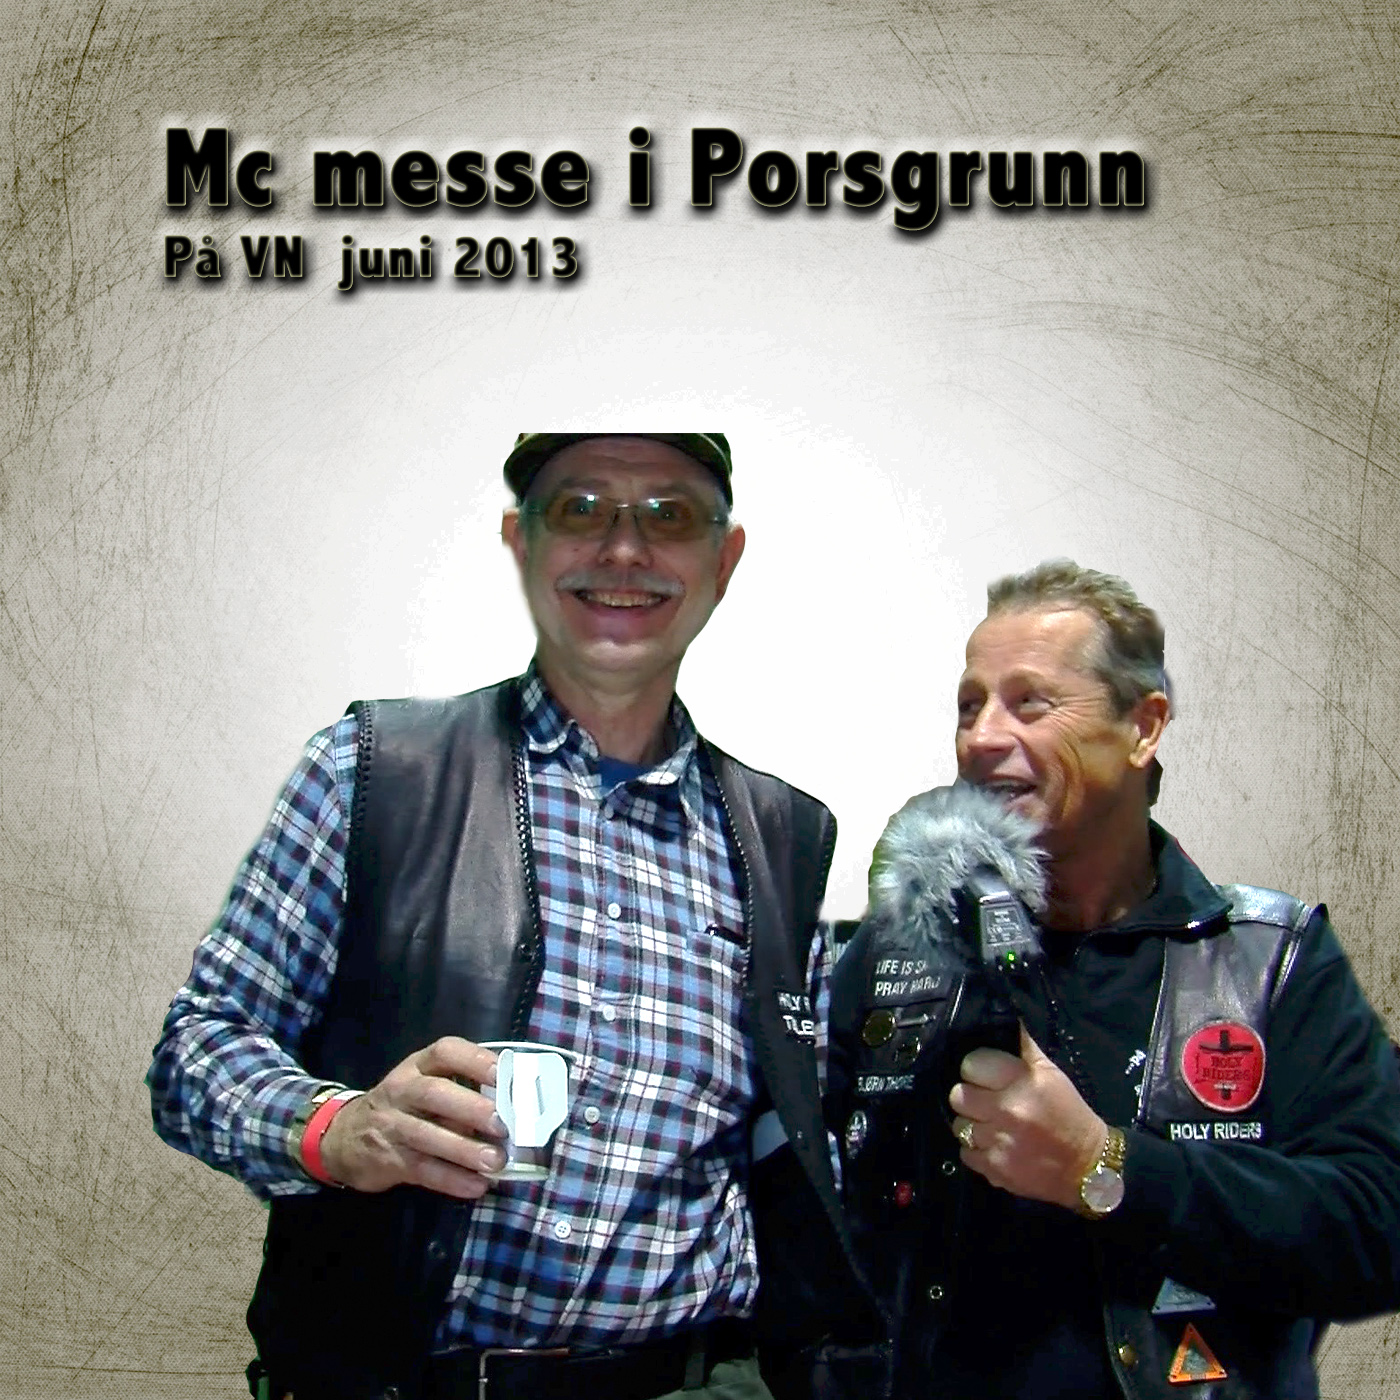 MC messe i Porsgrunn 2013